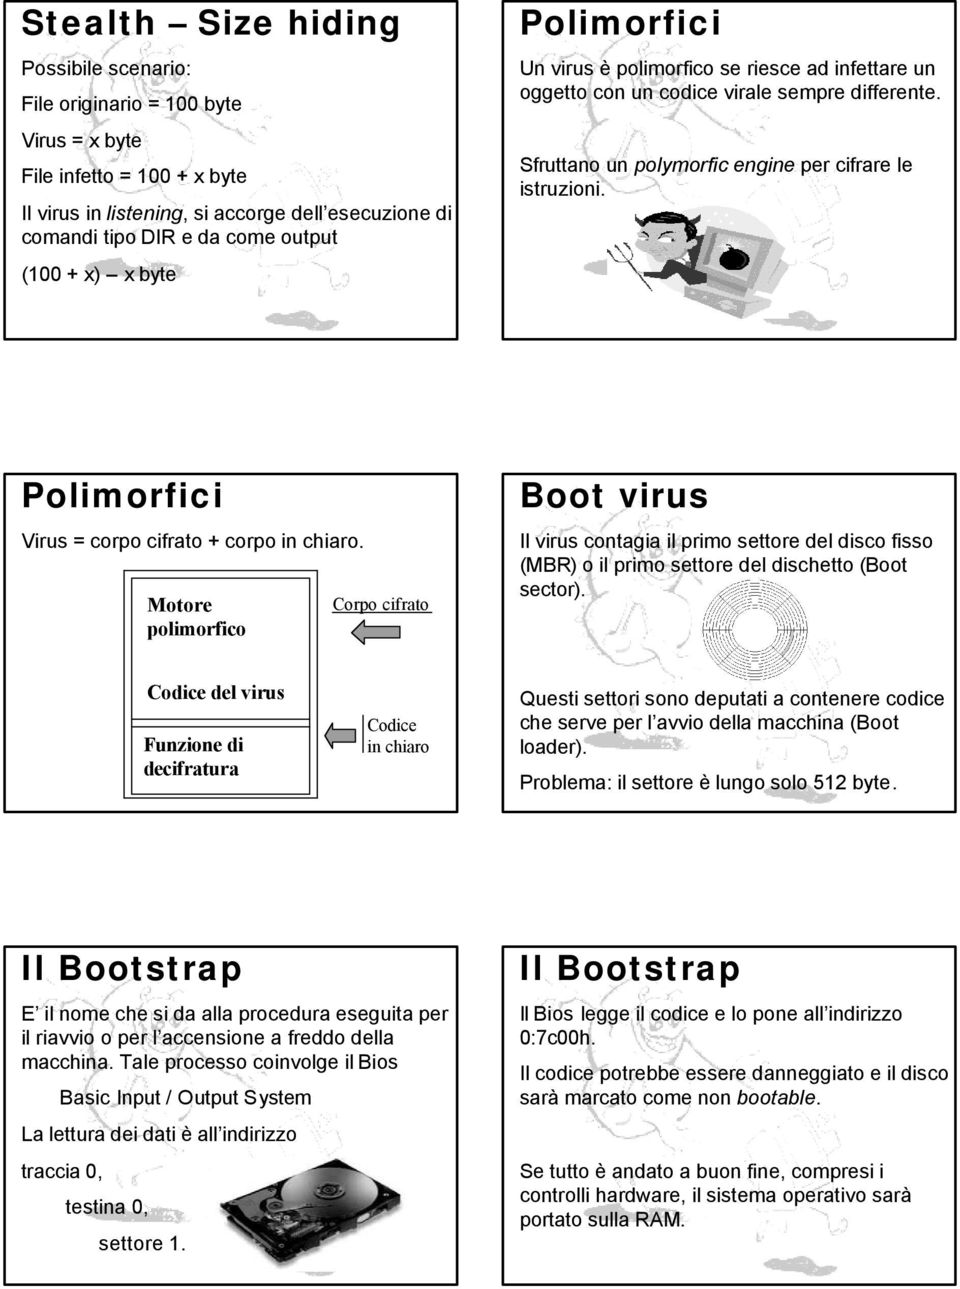 Polimorfici Virus = corpo cifrato + corpo in chiaro.